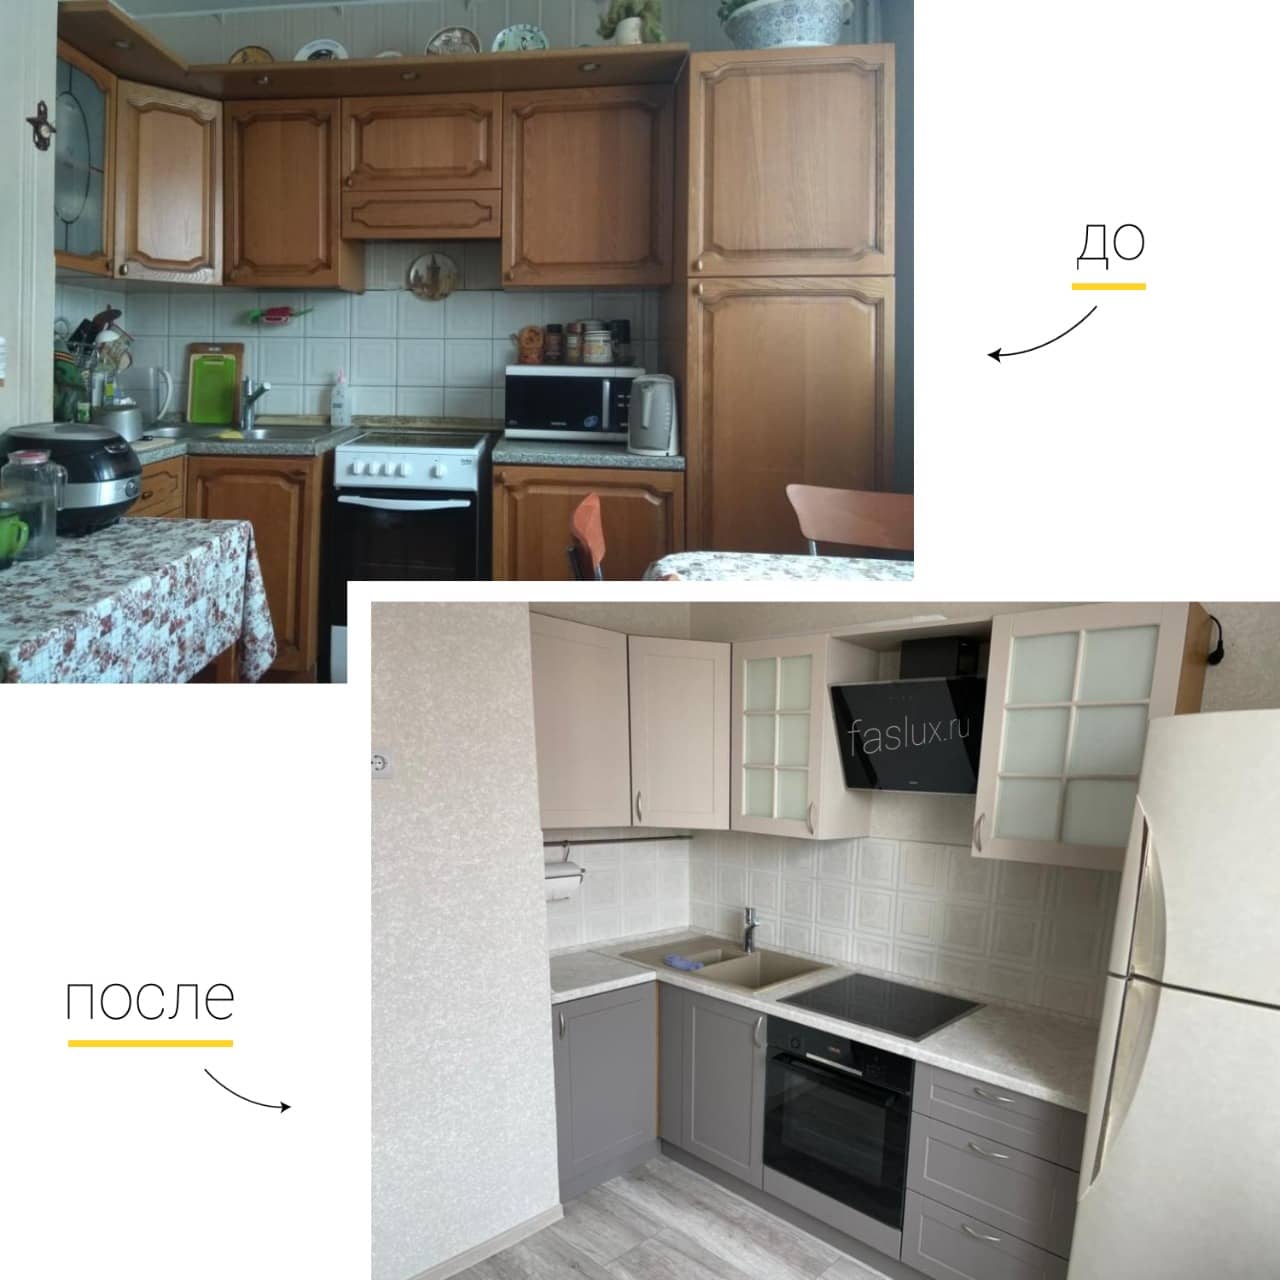 Поменять фасады на кухонном гарнитуре фото до и после